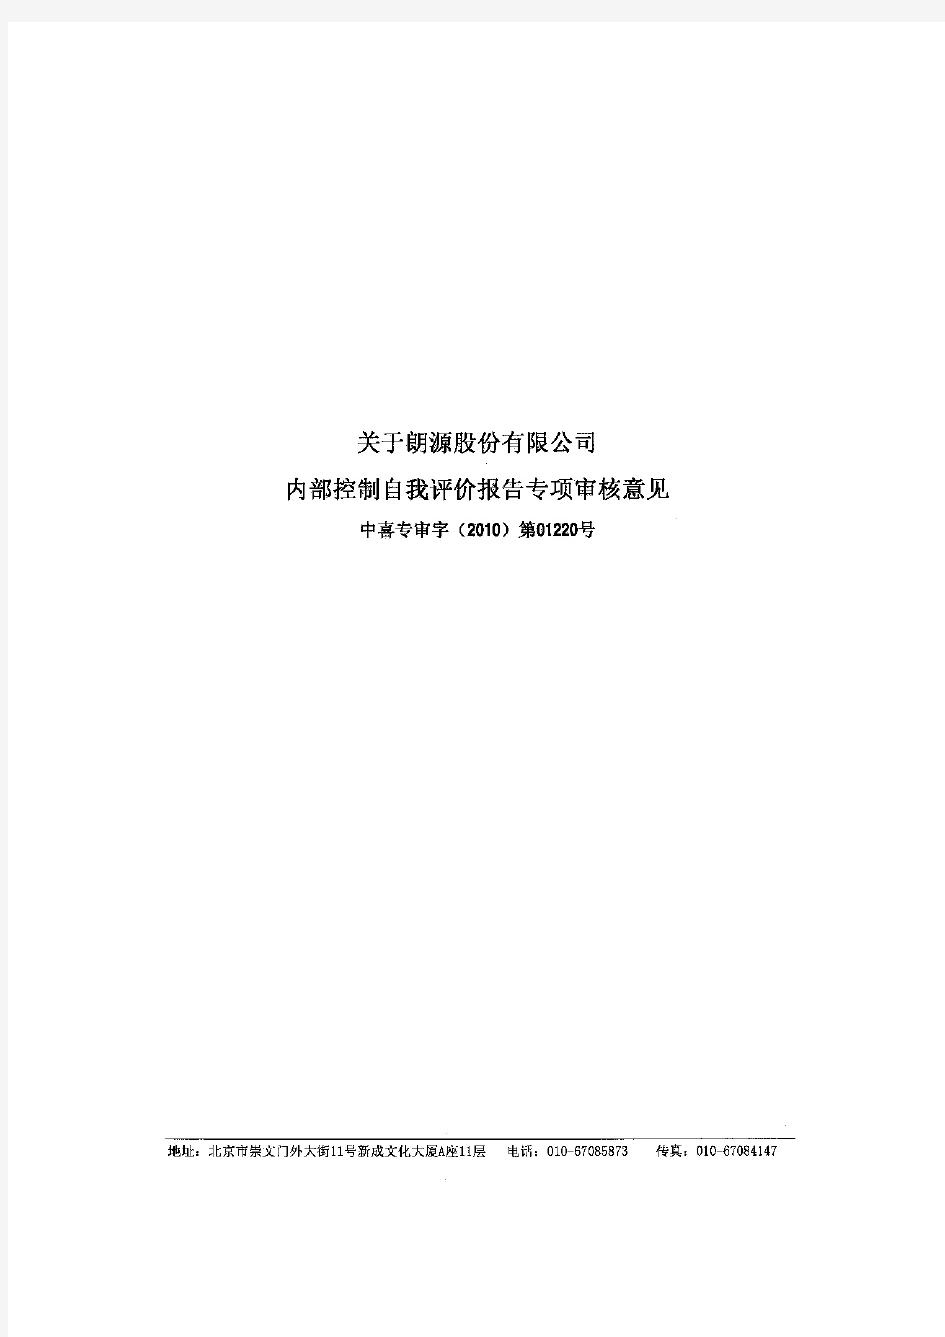 朗源股份：关于公司内部控制自我评价报告专项审核意见 2011-01-19